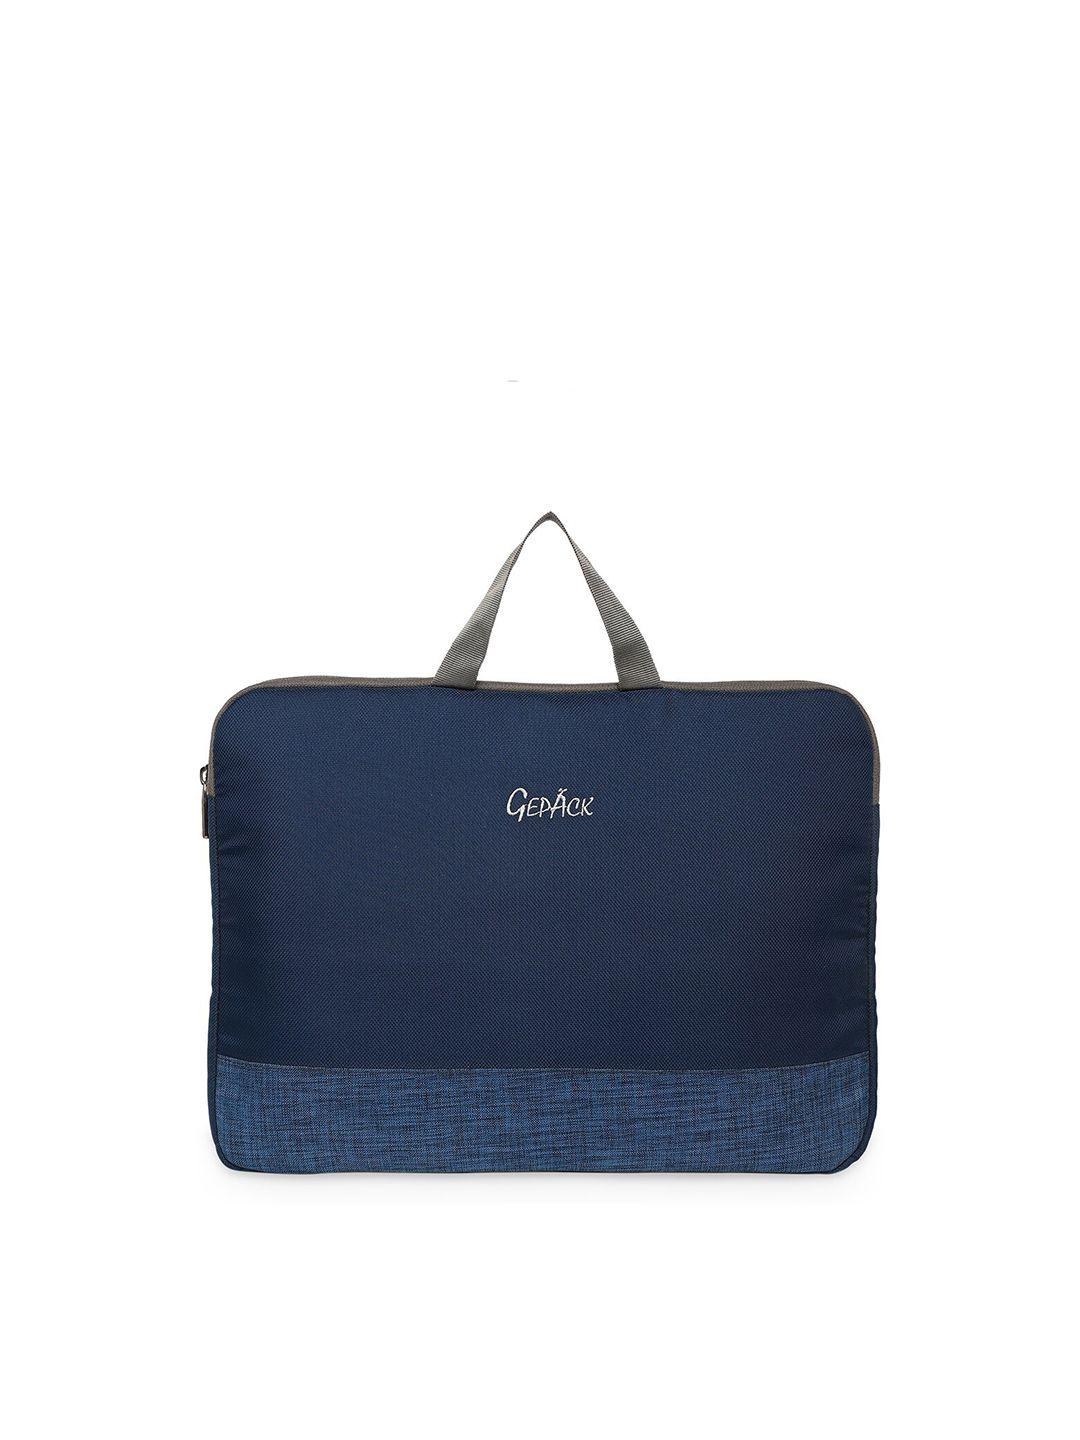 gepack unisex navy blue & grey laptop sleeve